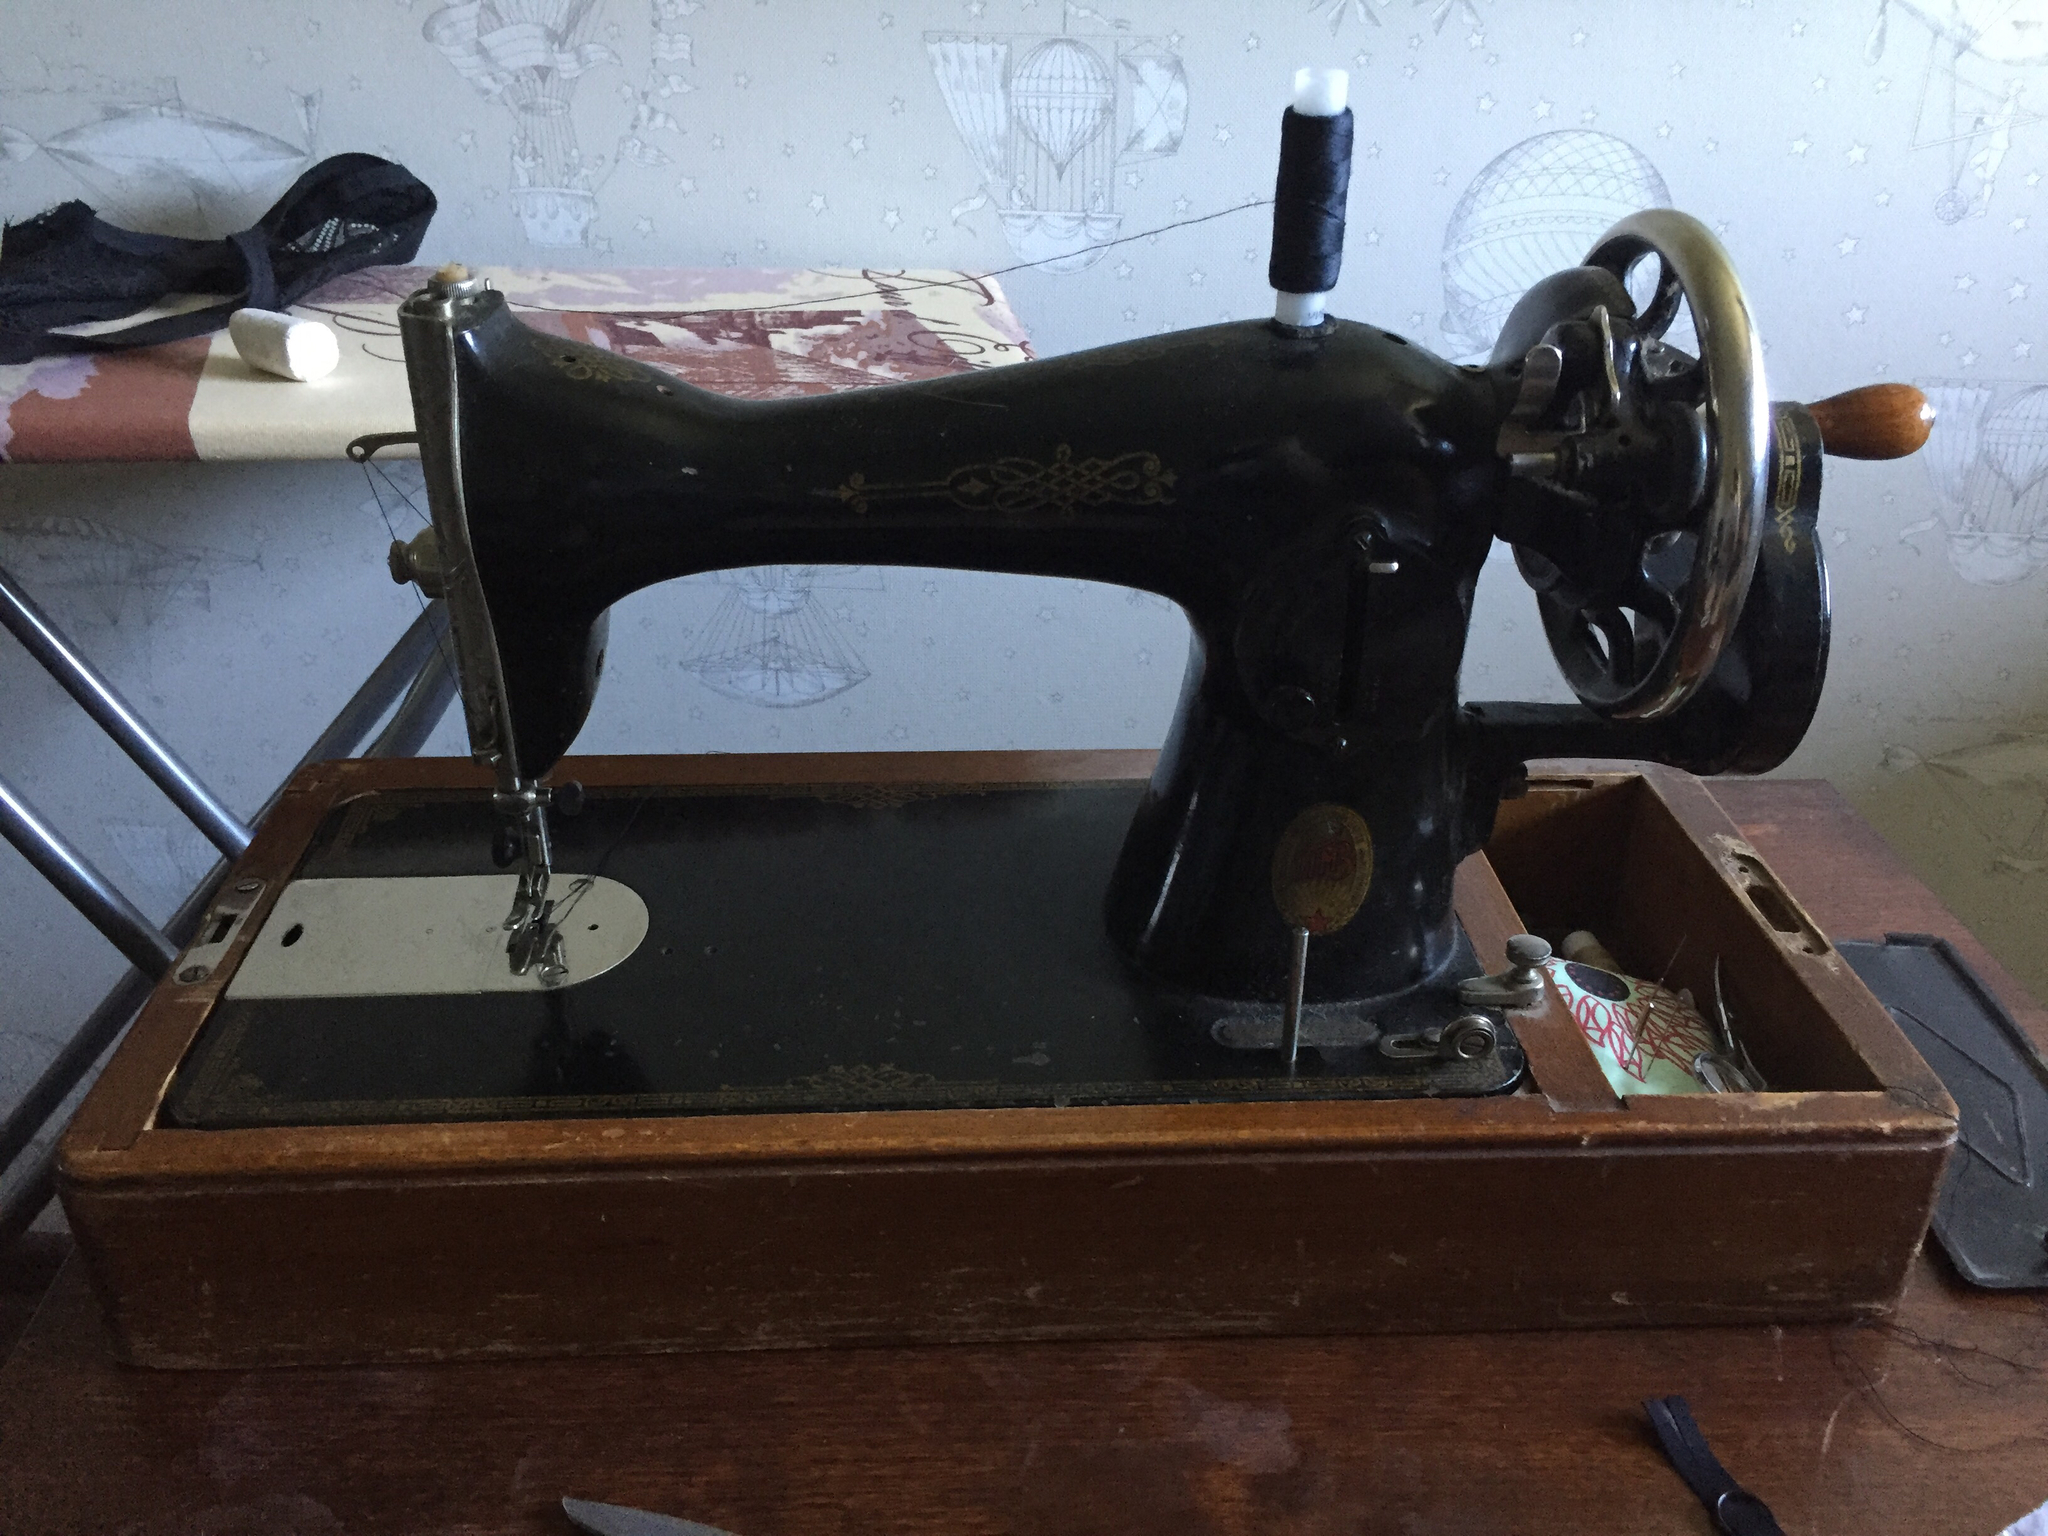 10 приёмов, как ровно шить на швейной машинке